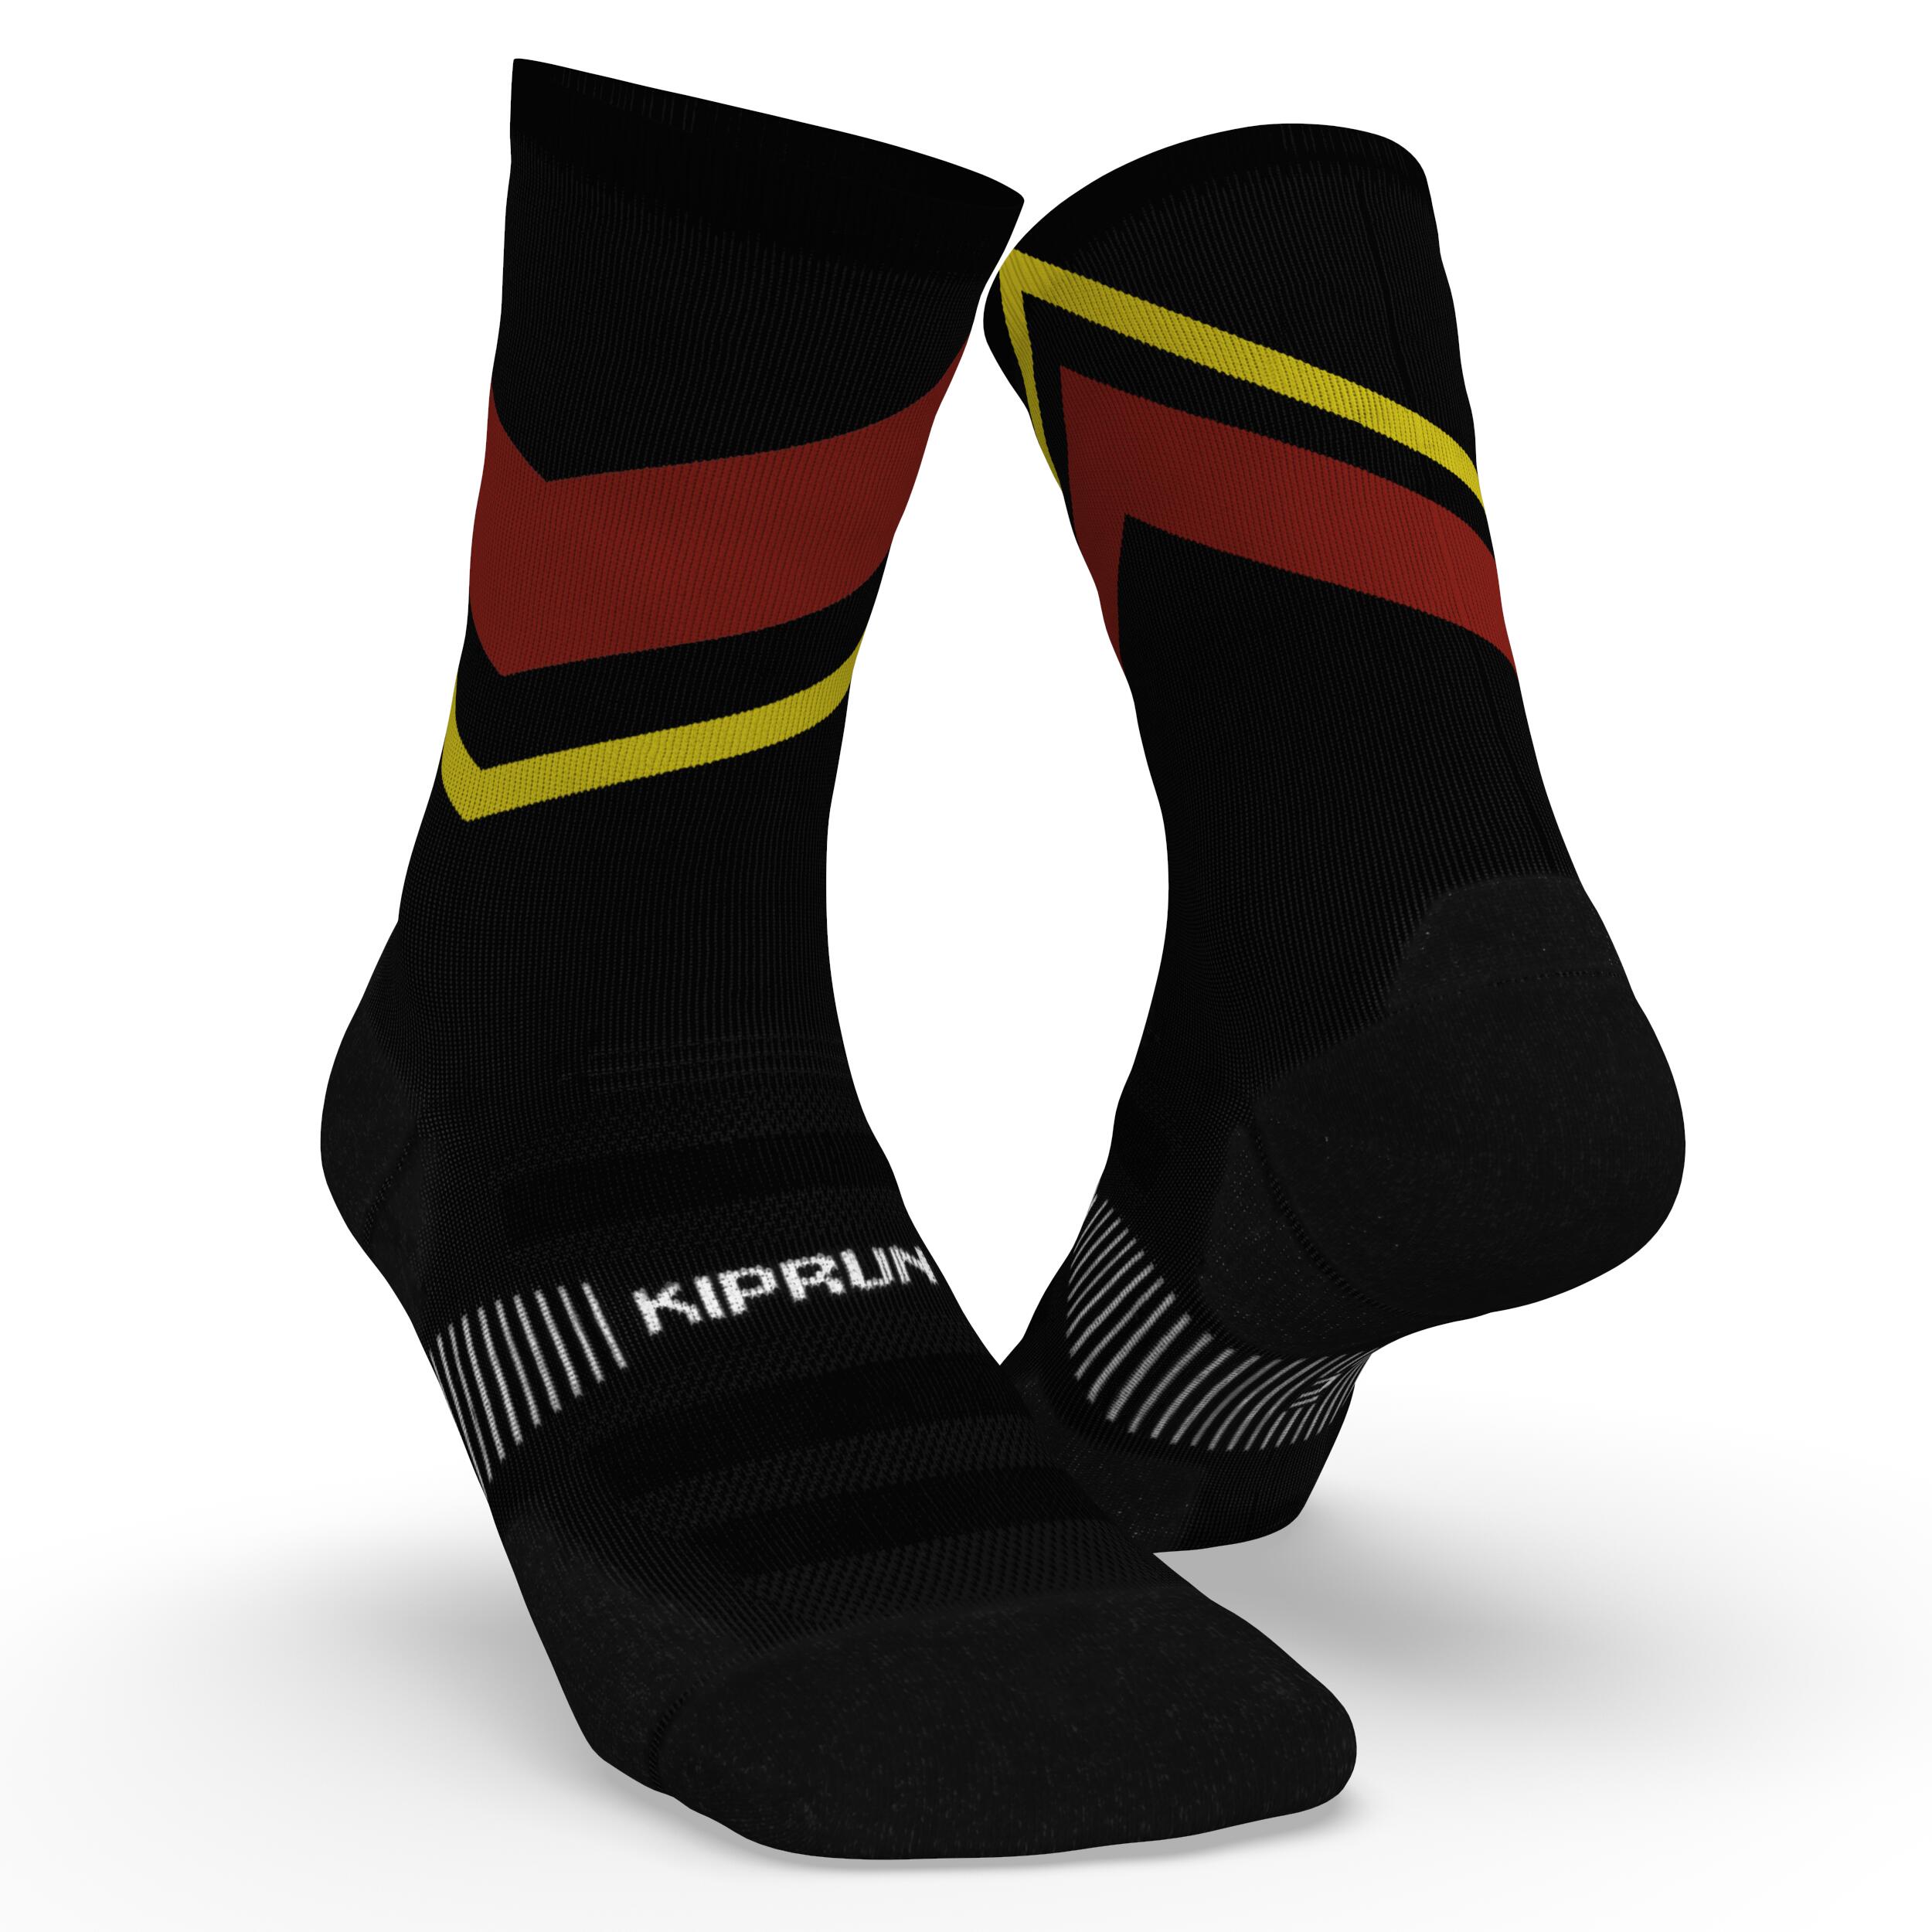 chaussettes de running run900 epaisses mi-mollet noires rouges jaunes - kiprun